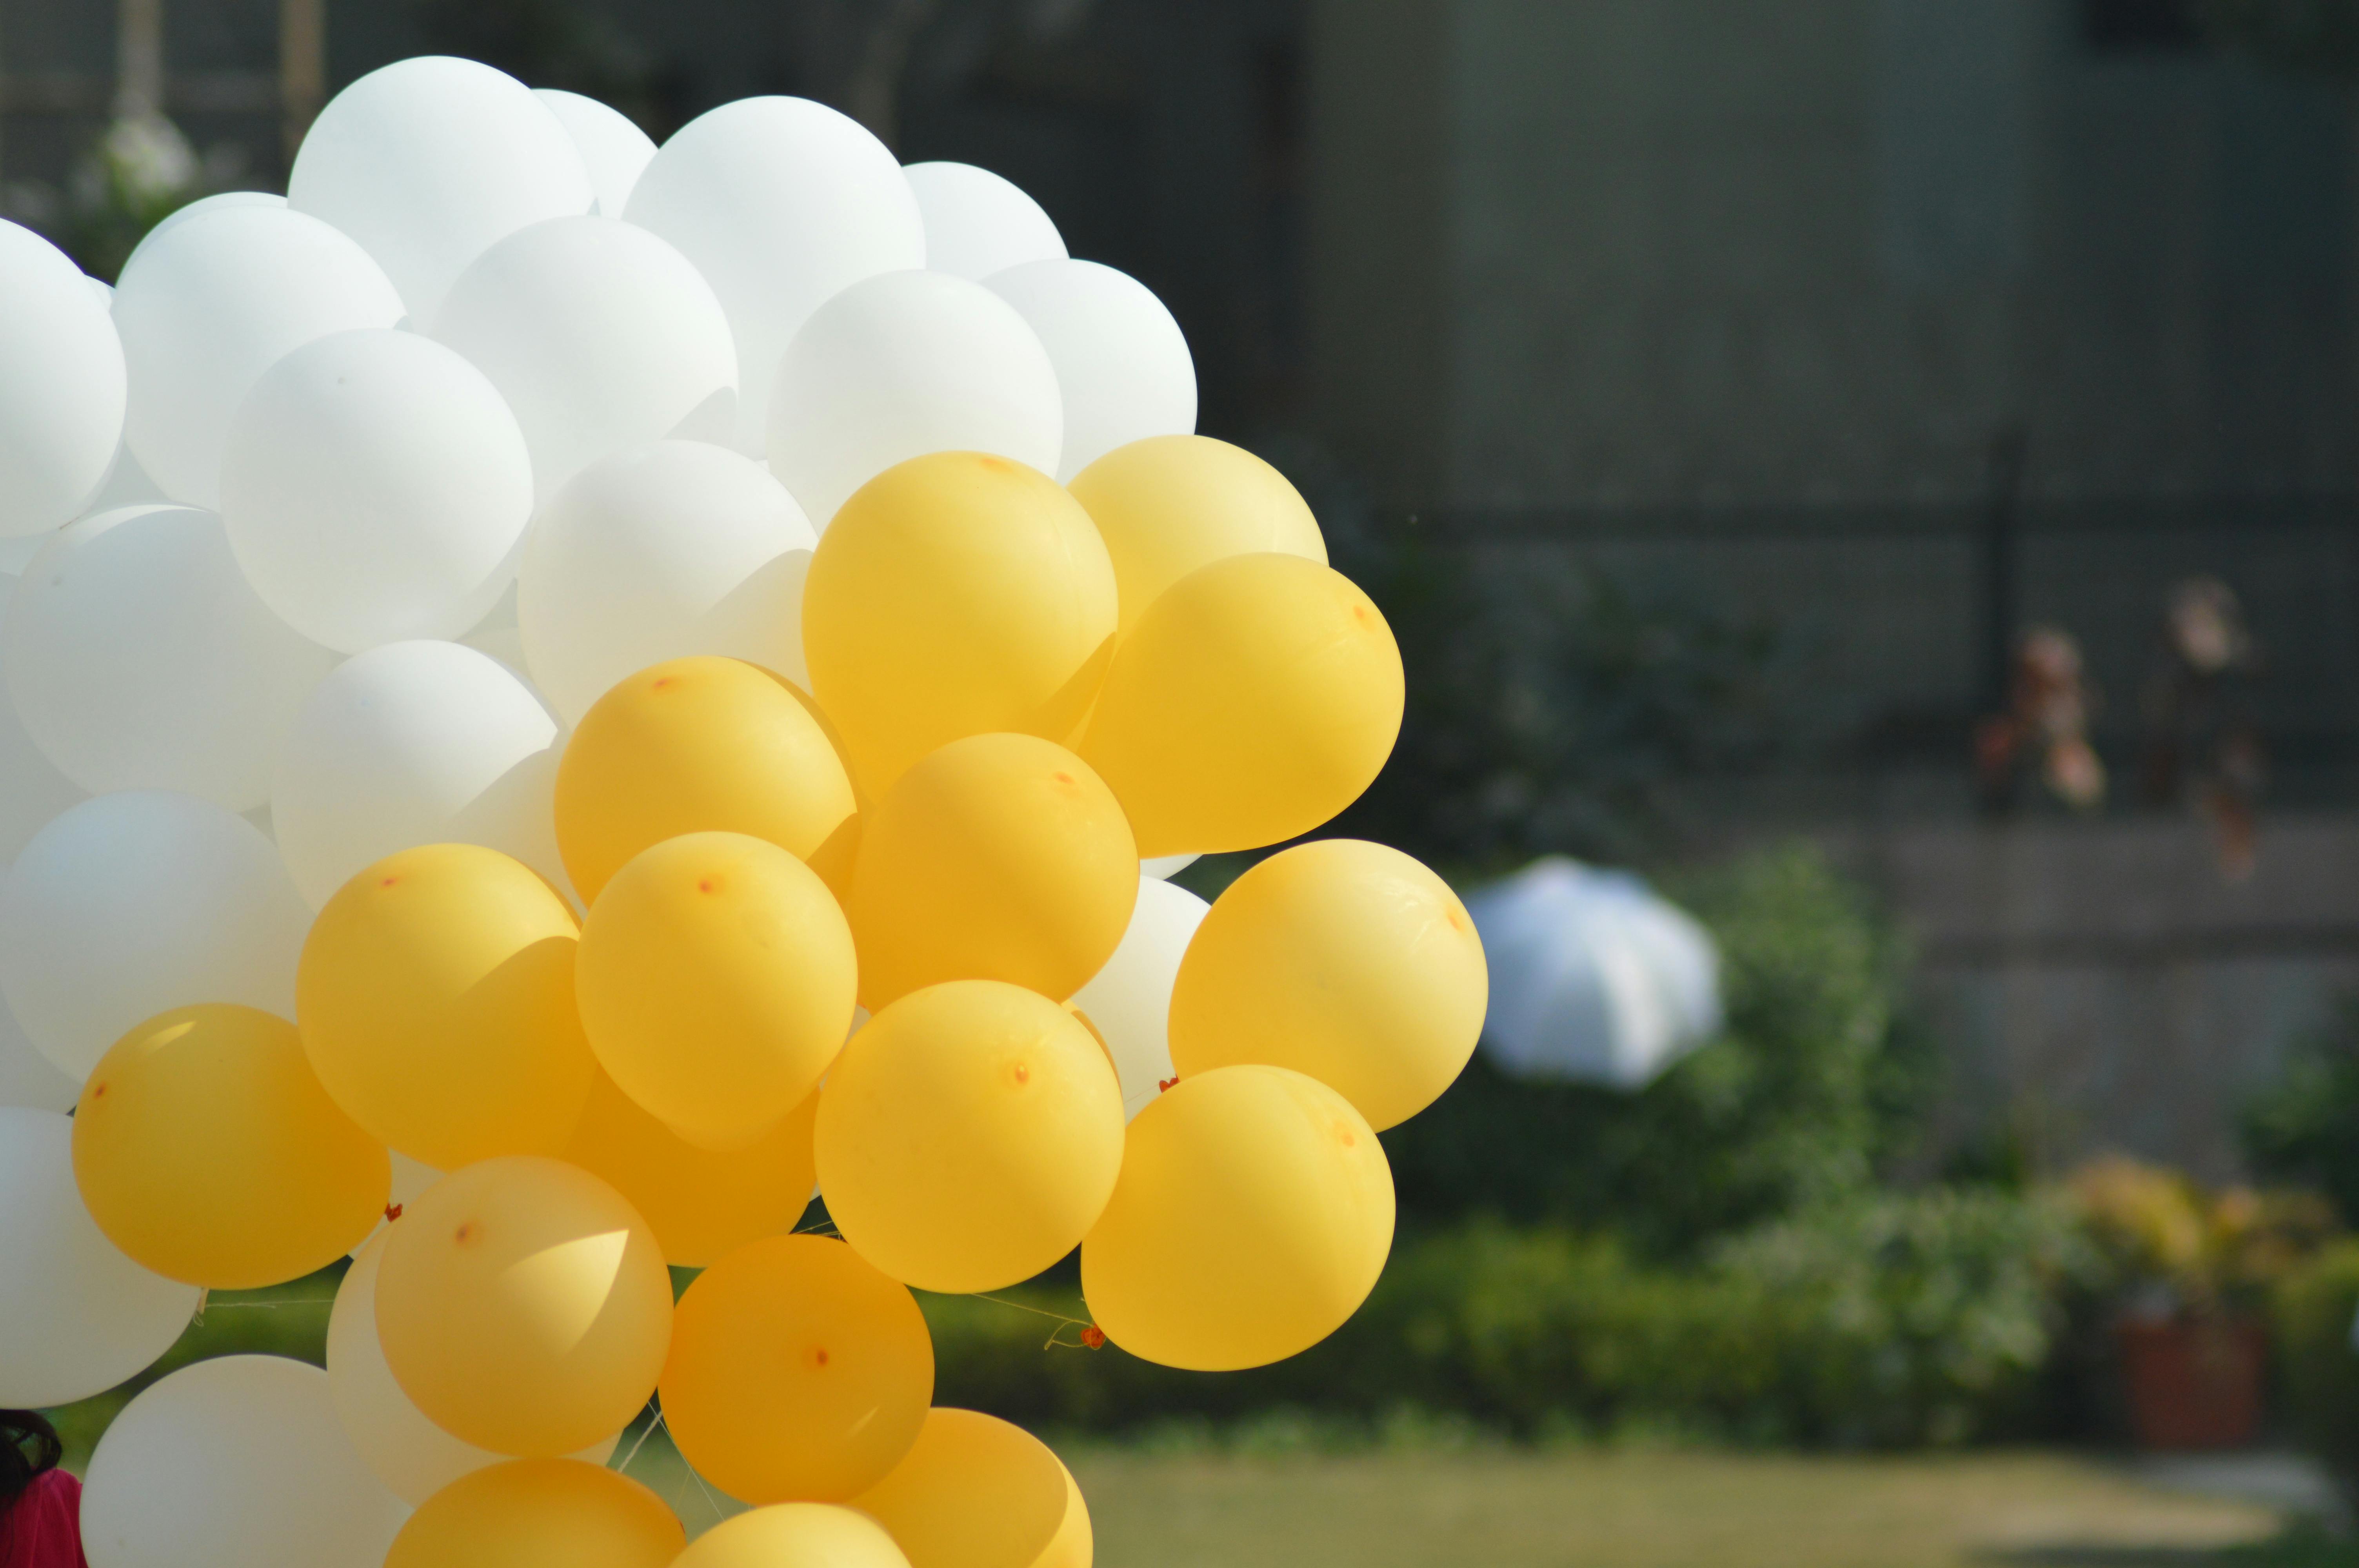 Free stock photo of balloon, balloons, white balloons